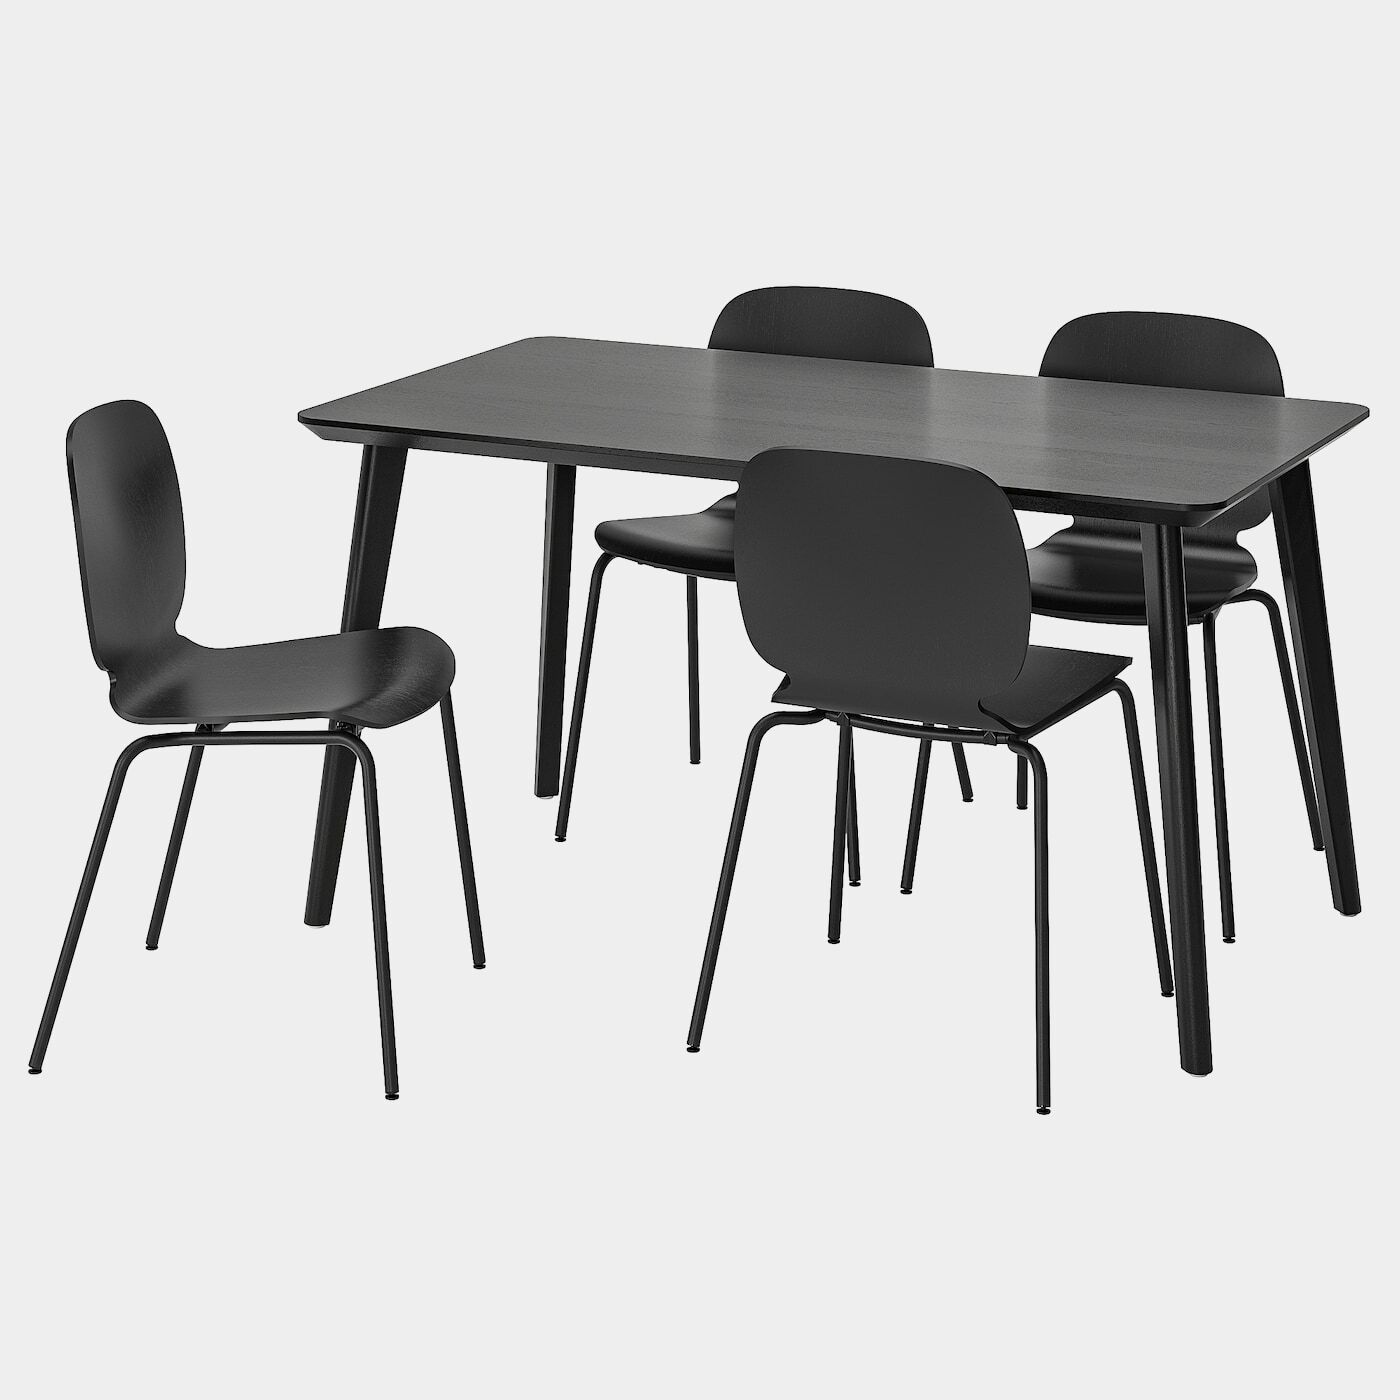 LISABO / SVENBERTIL Tisch und 4 Stühle  - Essplatzgruppe - Möbel Ideen für dein Zuhause von Home Trends. Möbel Trends von Social Media Influencer für dein Skandi Zuhause.